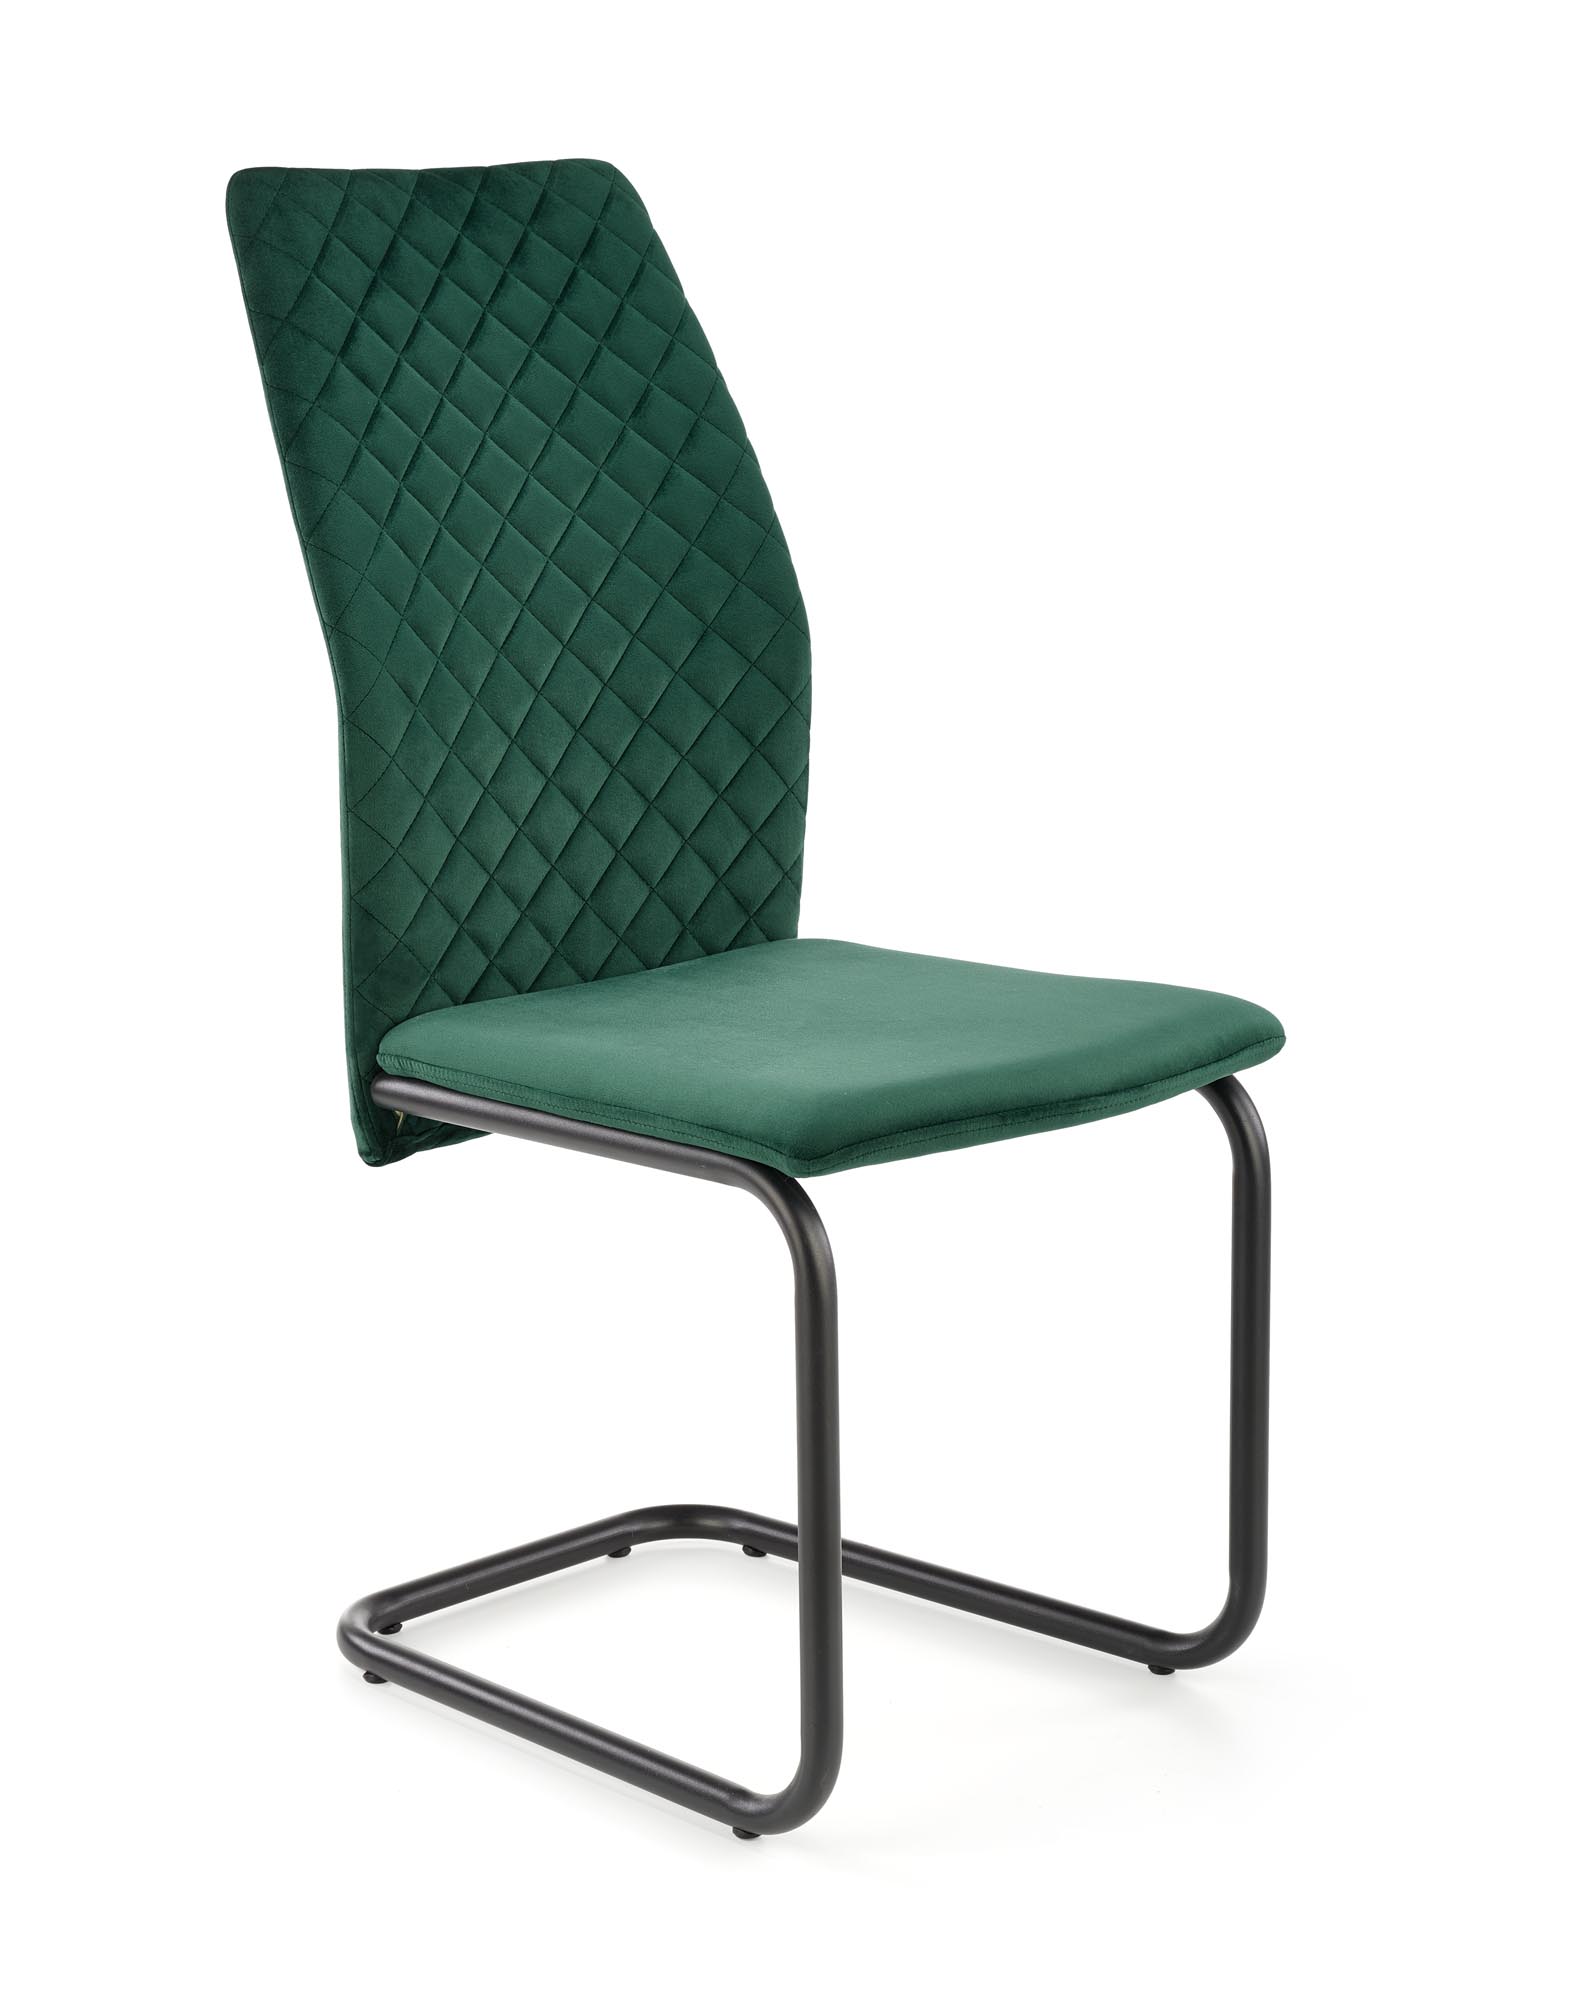 K444 stolica, boja: tamno zelena